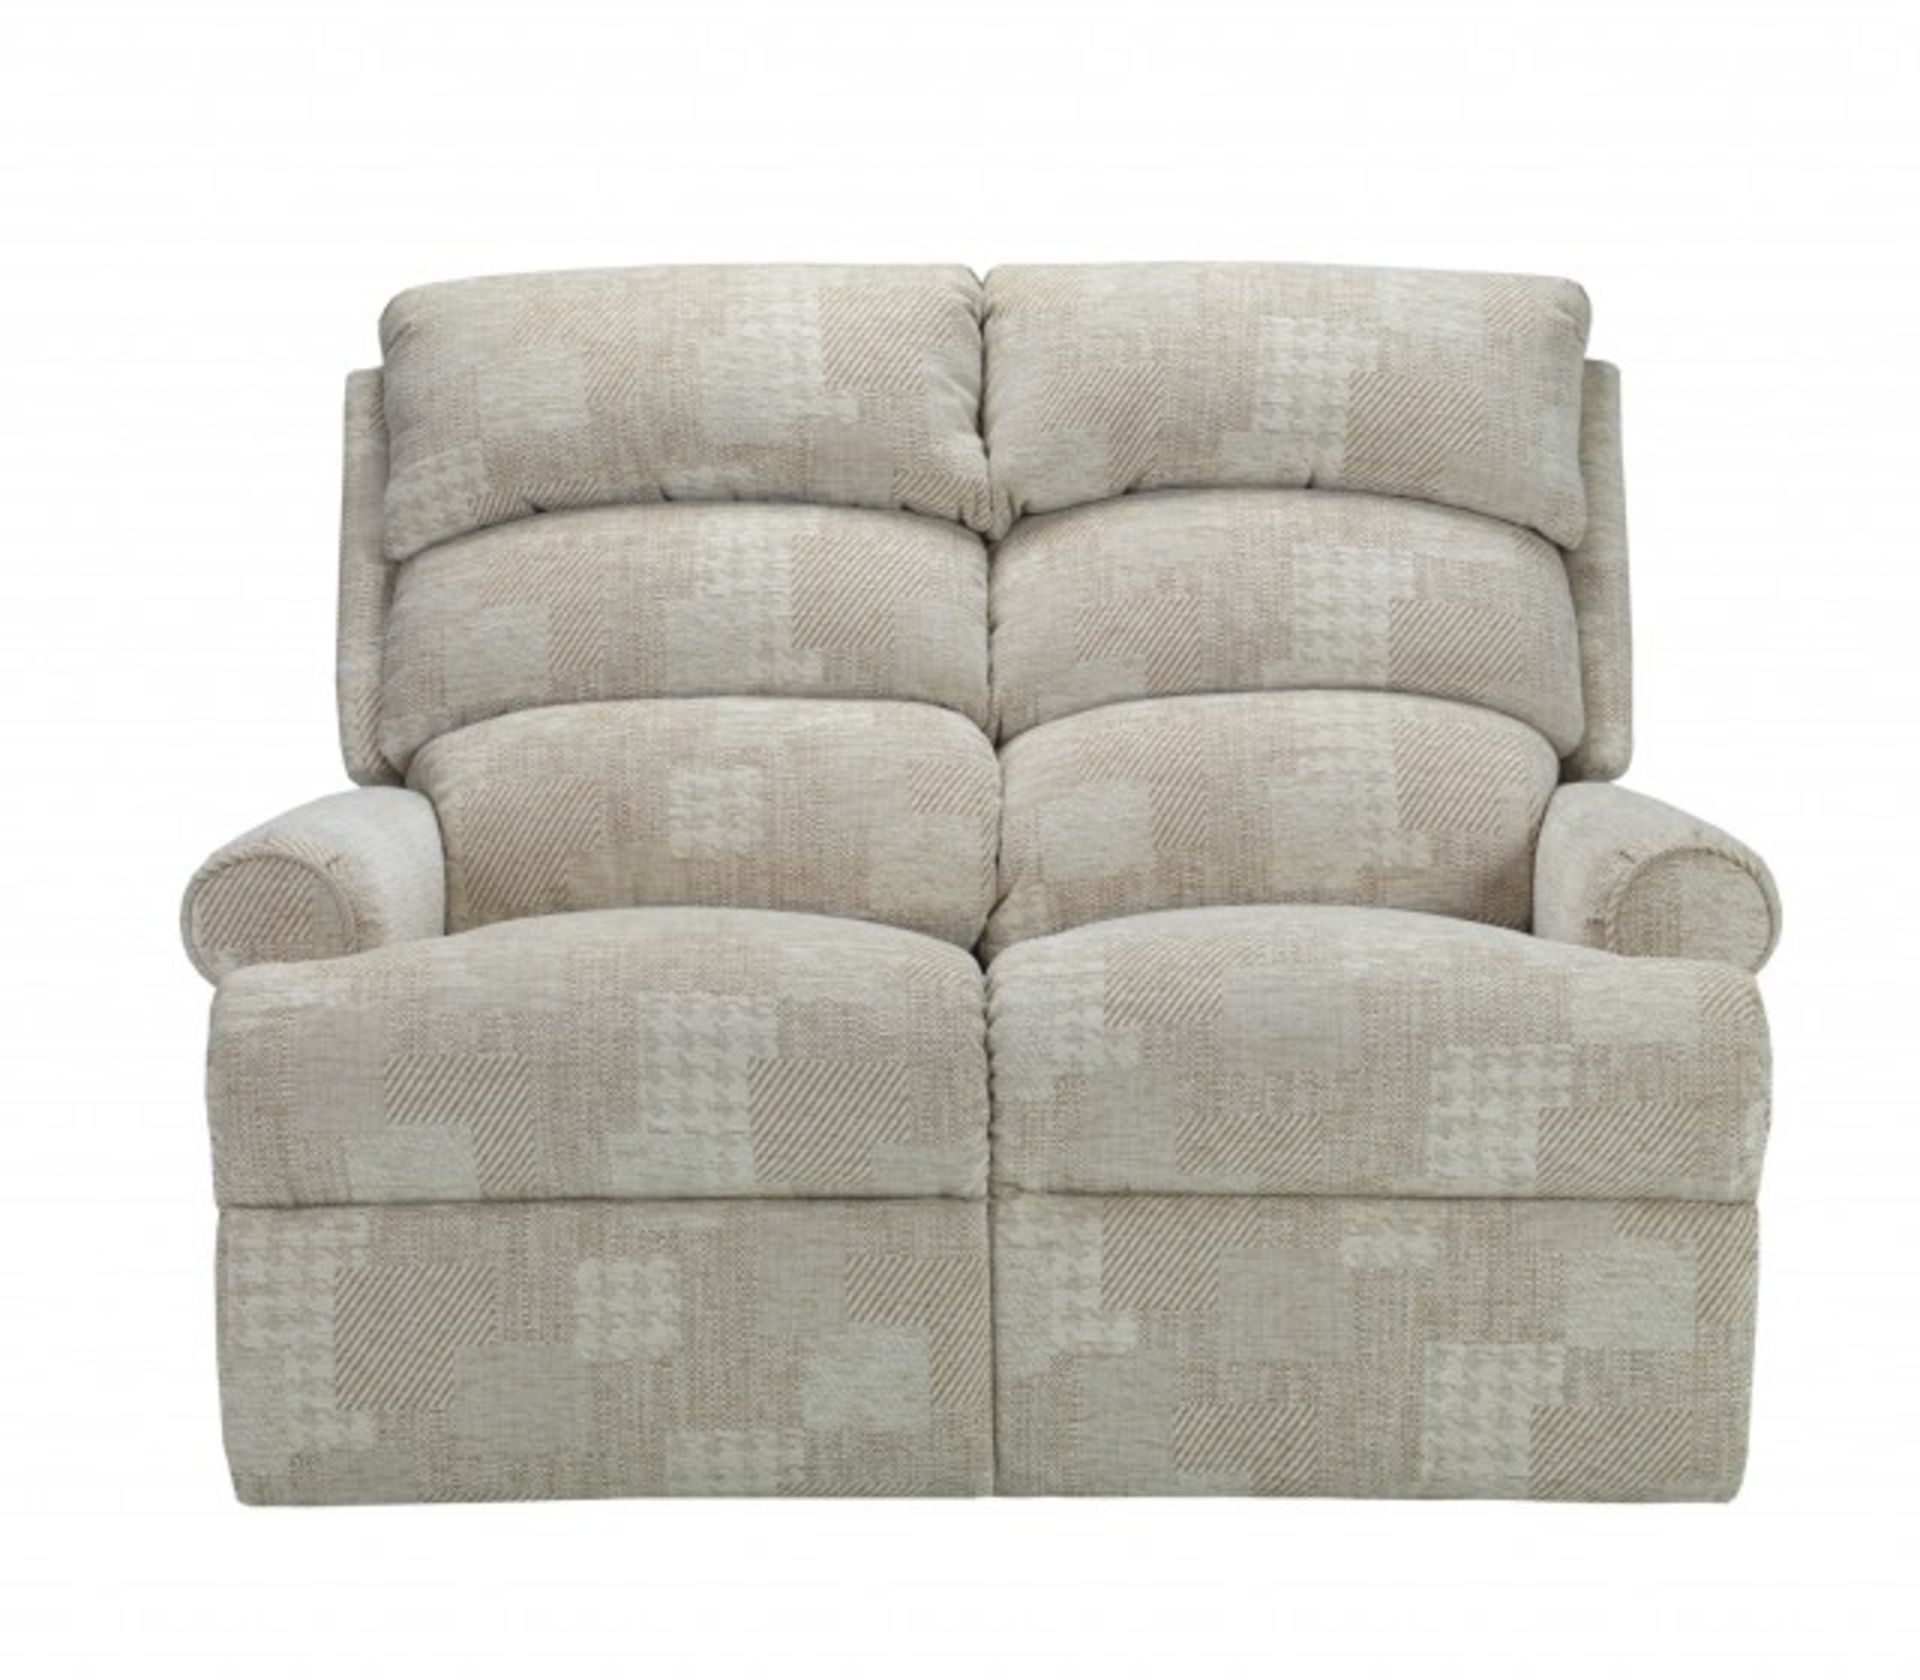 Harrow Seater Sofa - £1399